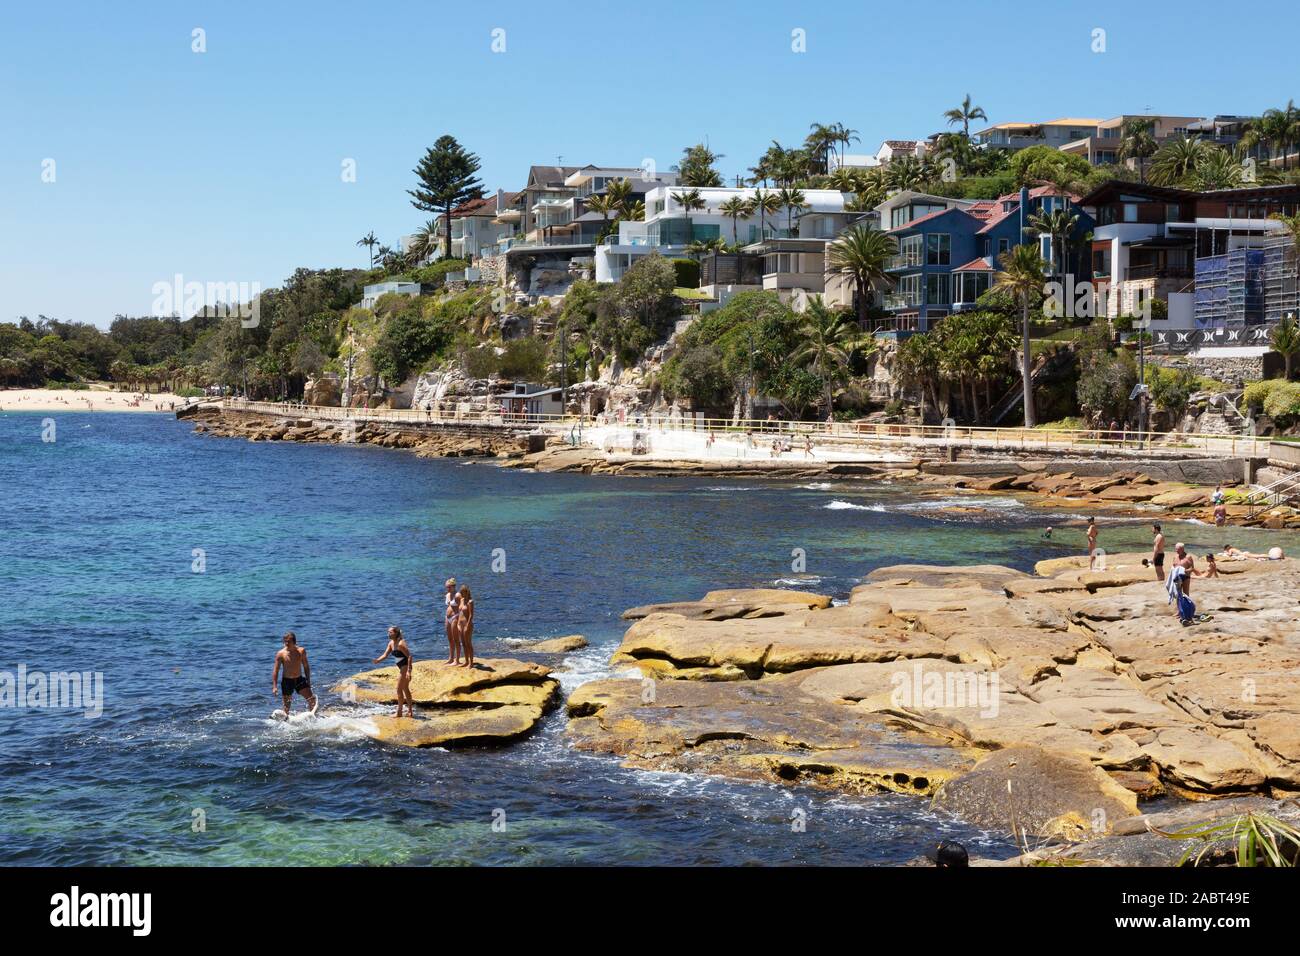 Manly Beach Sydney Australia - Vista della spiaggia in una giornata di sole con le persone che nuotano e che prendono il sole in estate. Manly, Sydney, nuovo Galles del Sud Australia Foto Stock